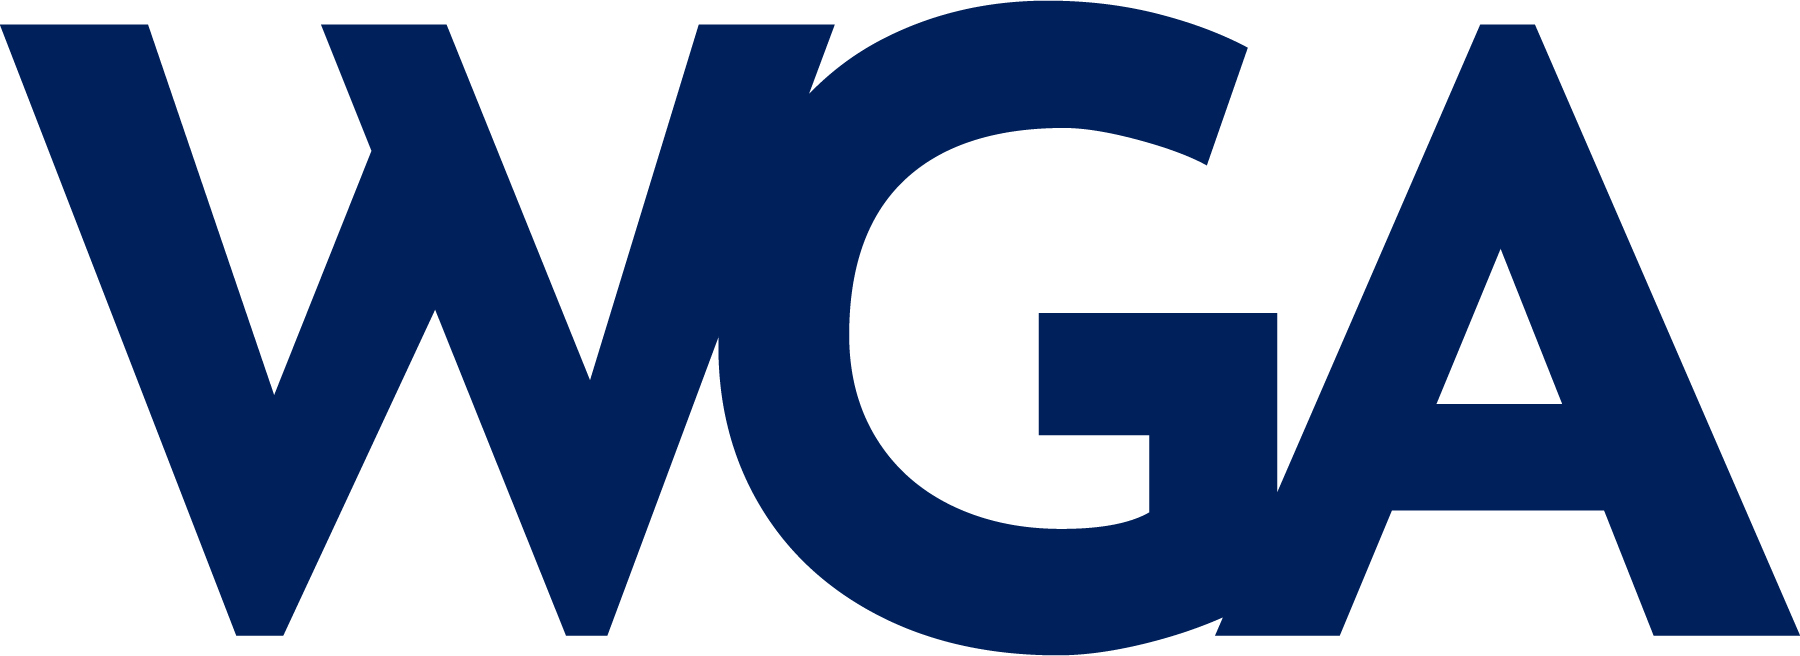 WGA logo